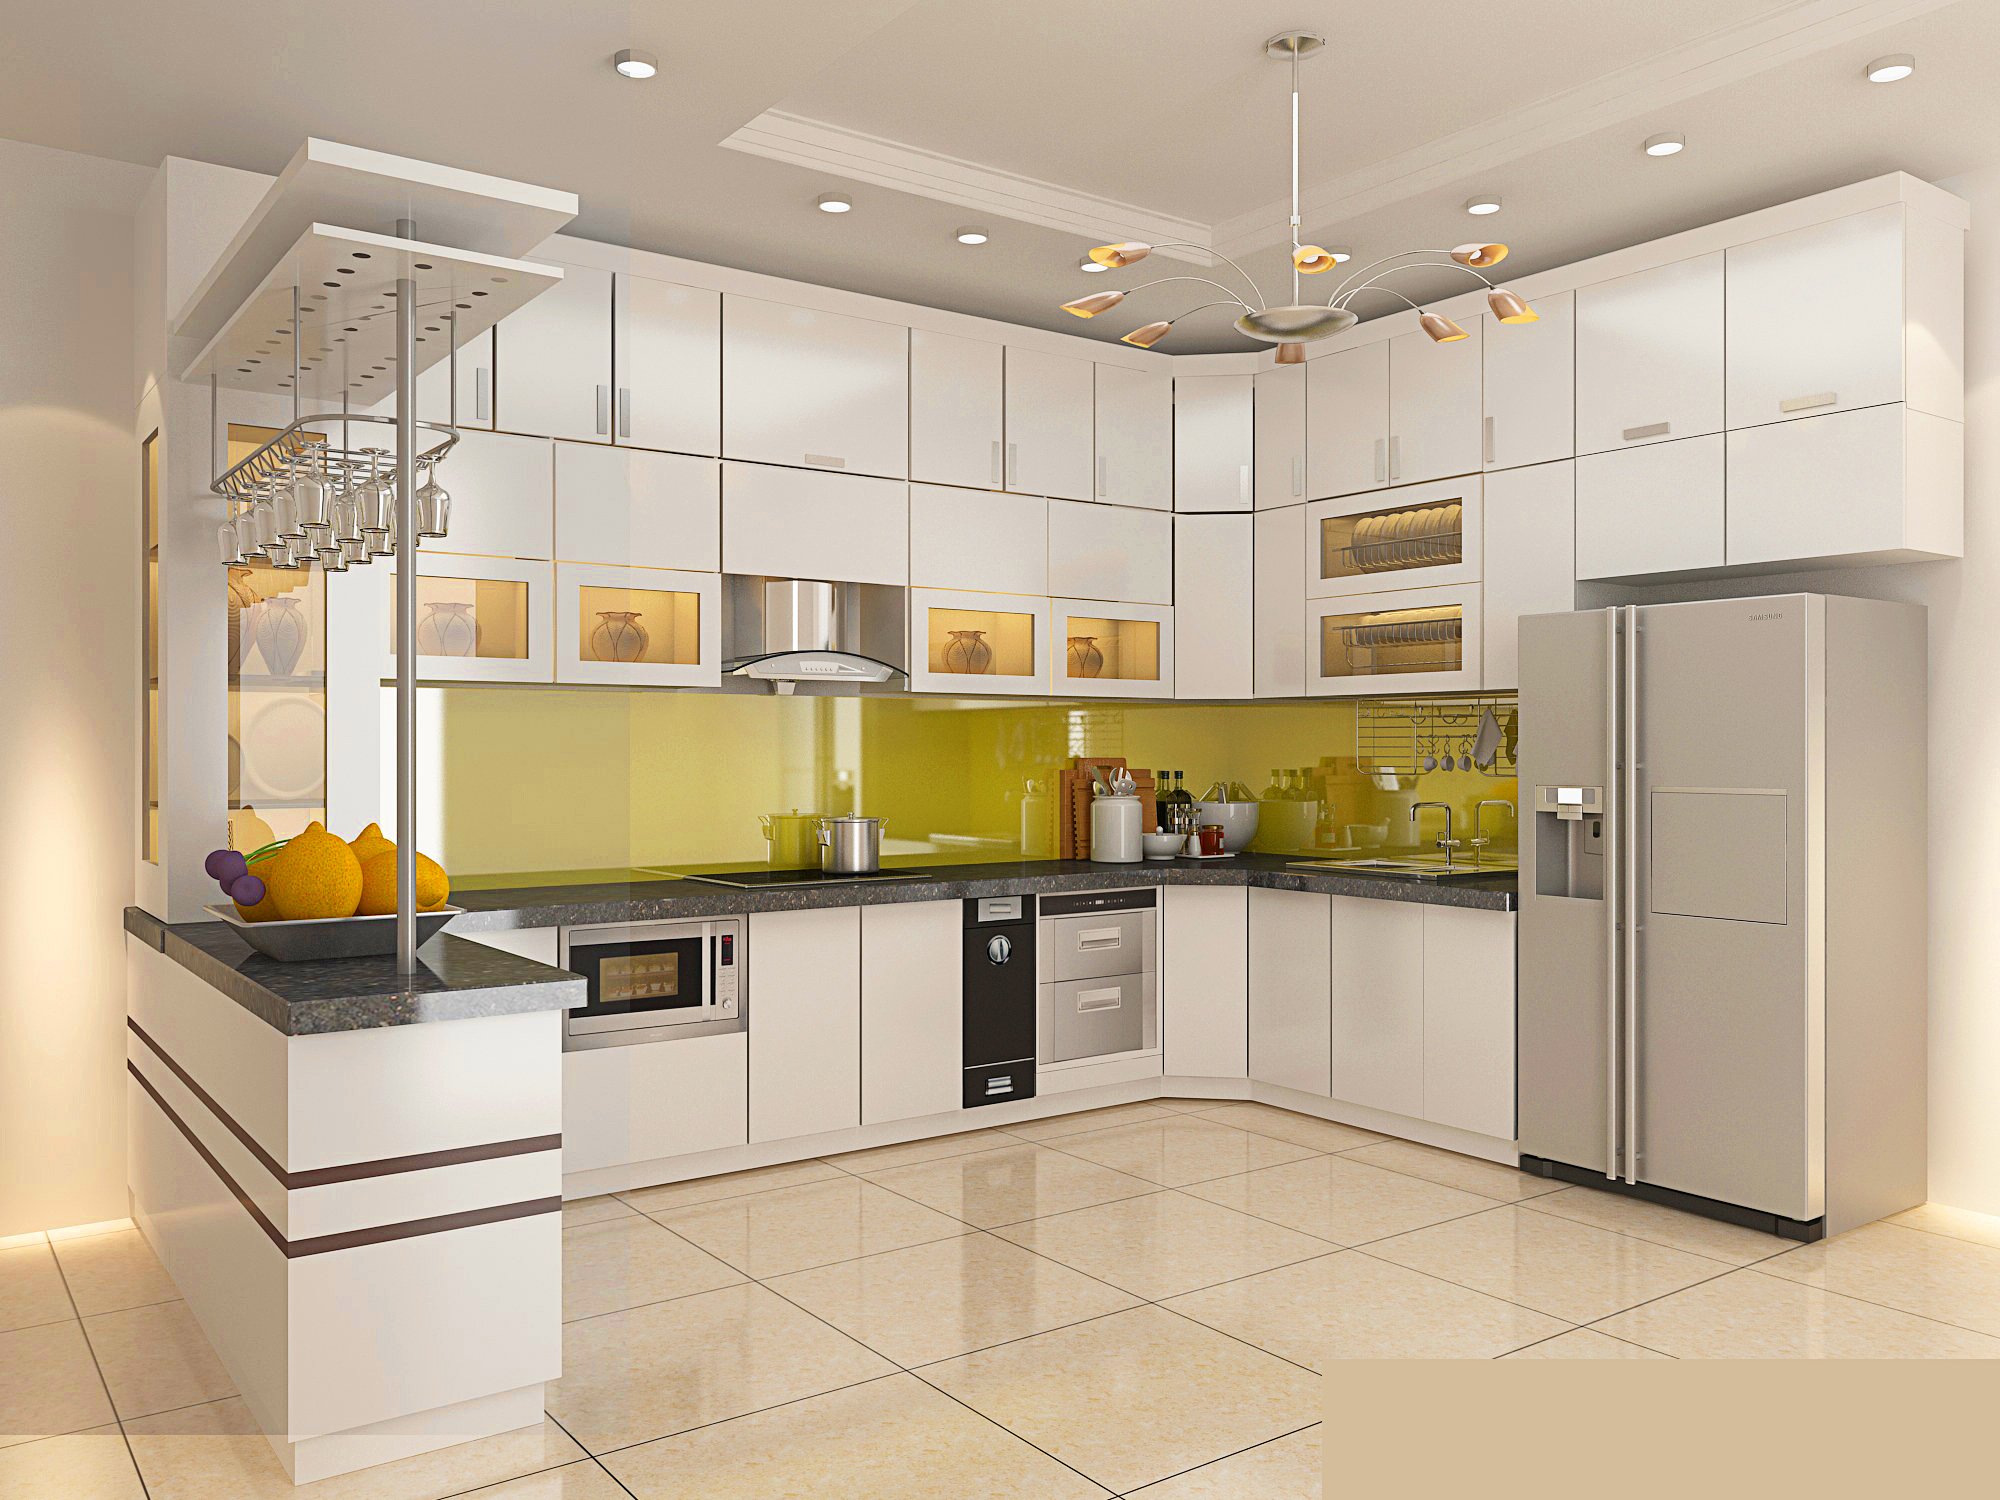 Thiết kế nhà bếp giúp không gian thêm rộng rãi